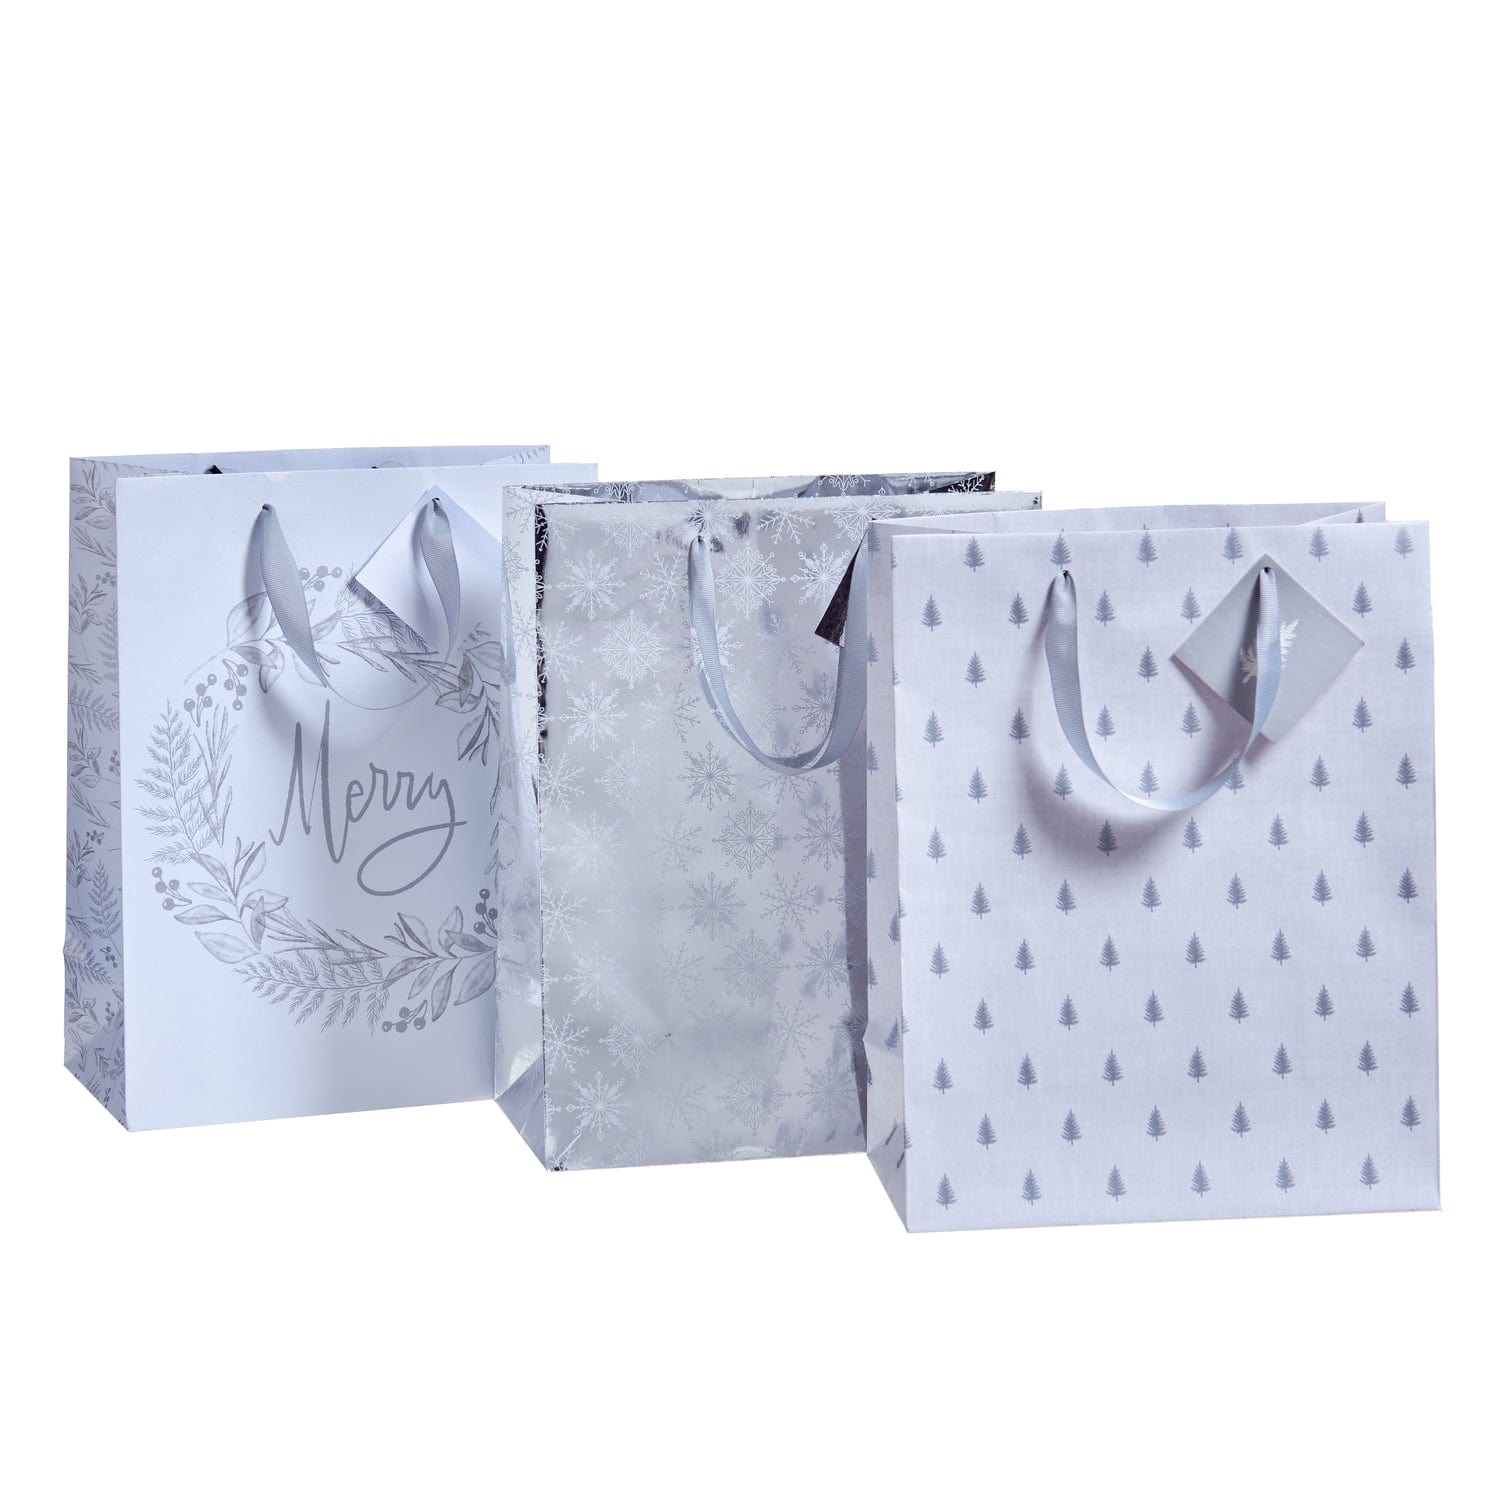 Luxury paper bags